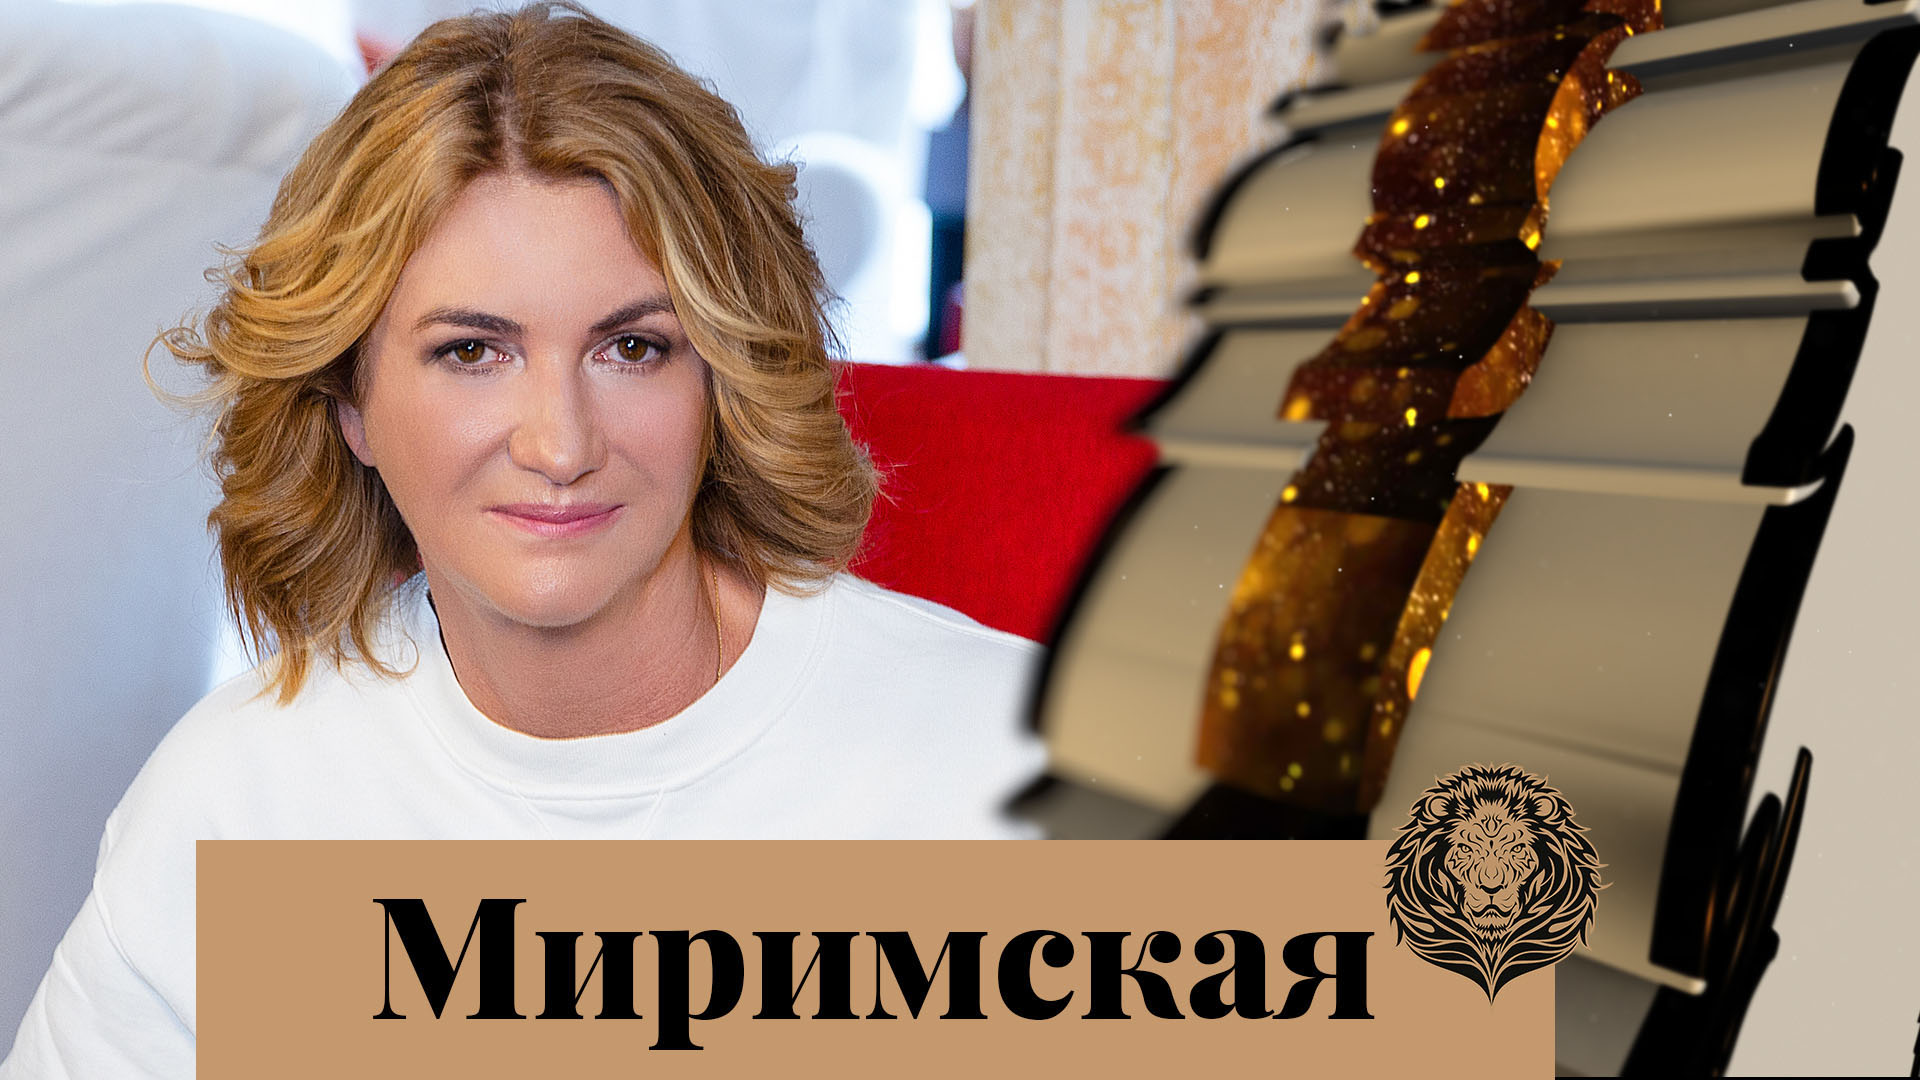 Ольга Миримская: Если мне сложно — я этим не делюсь, я это преодолею — Интервью с обложки